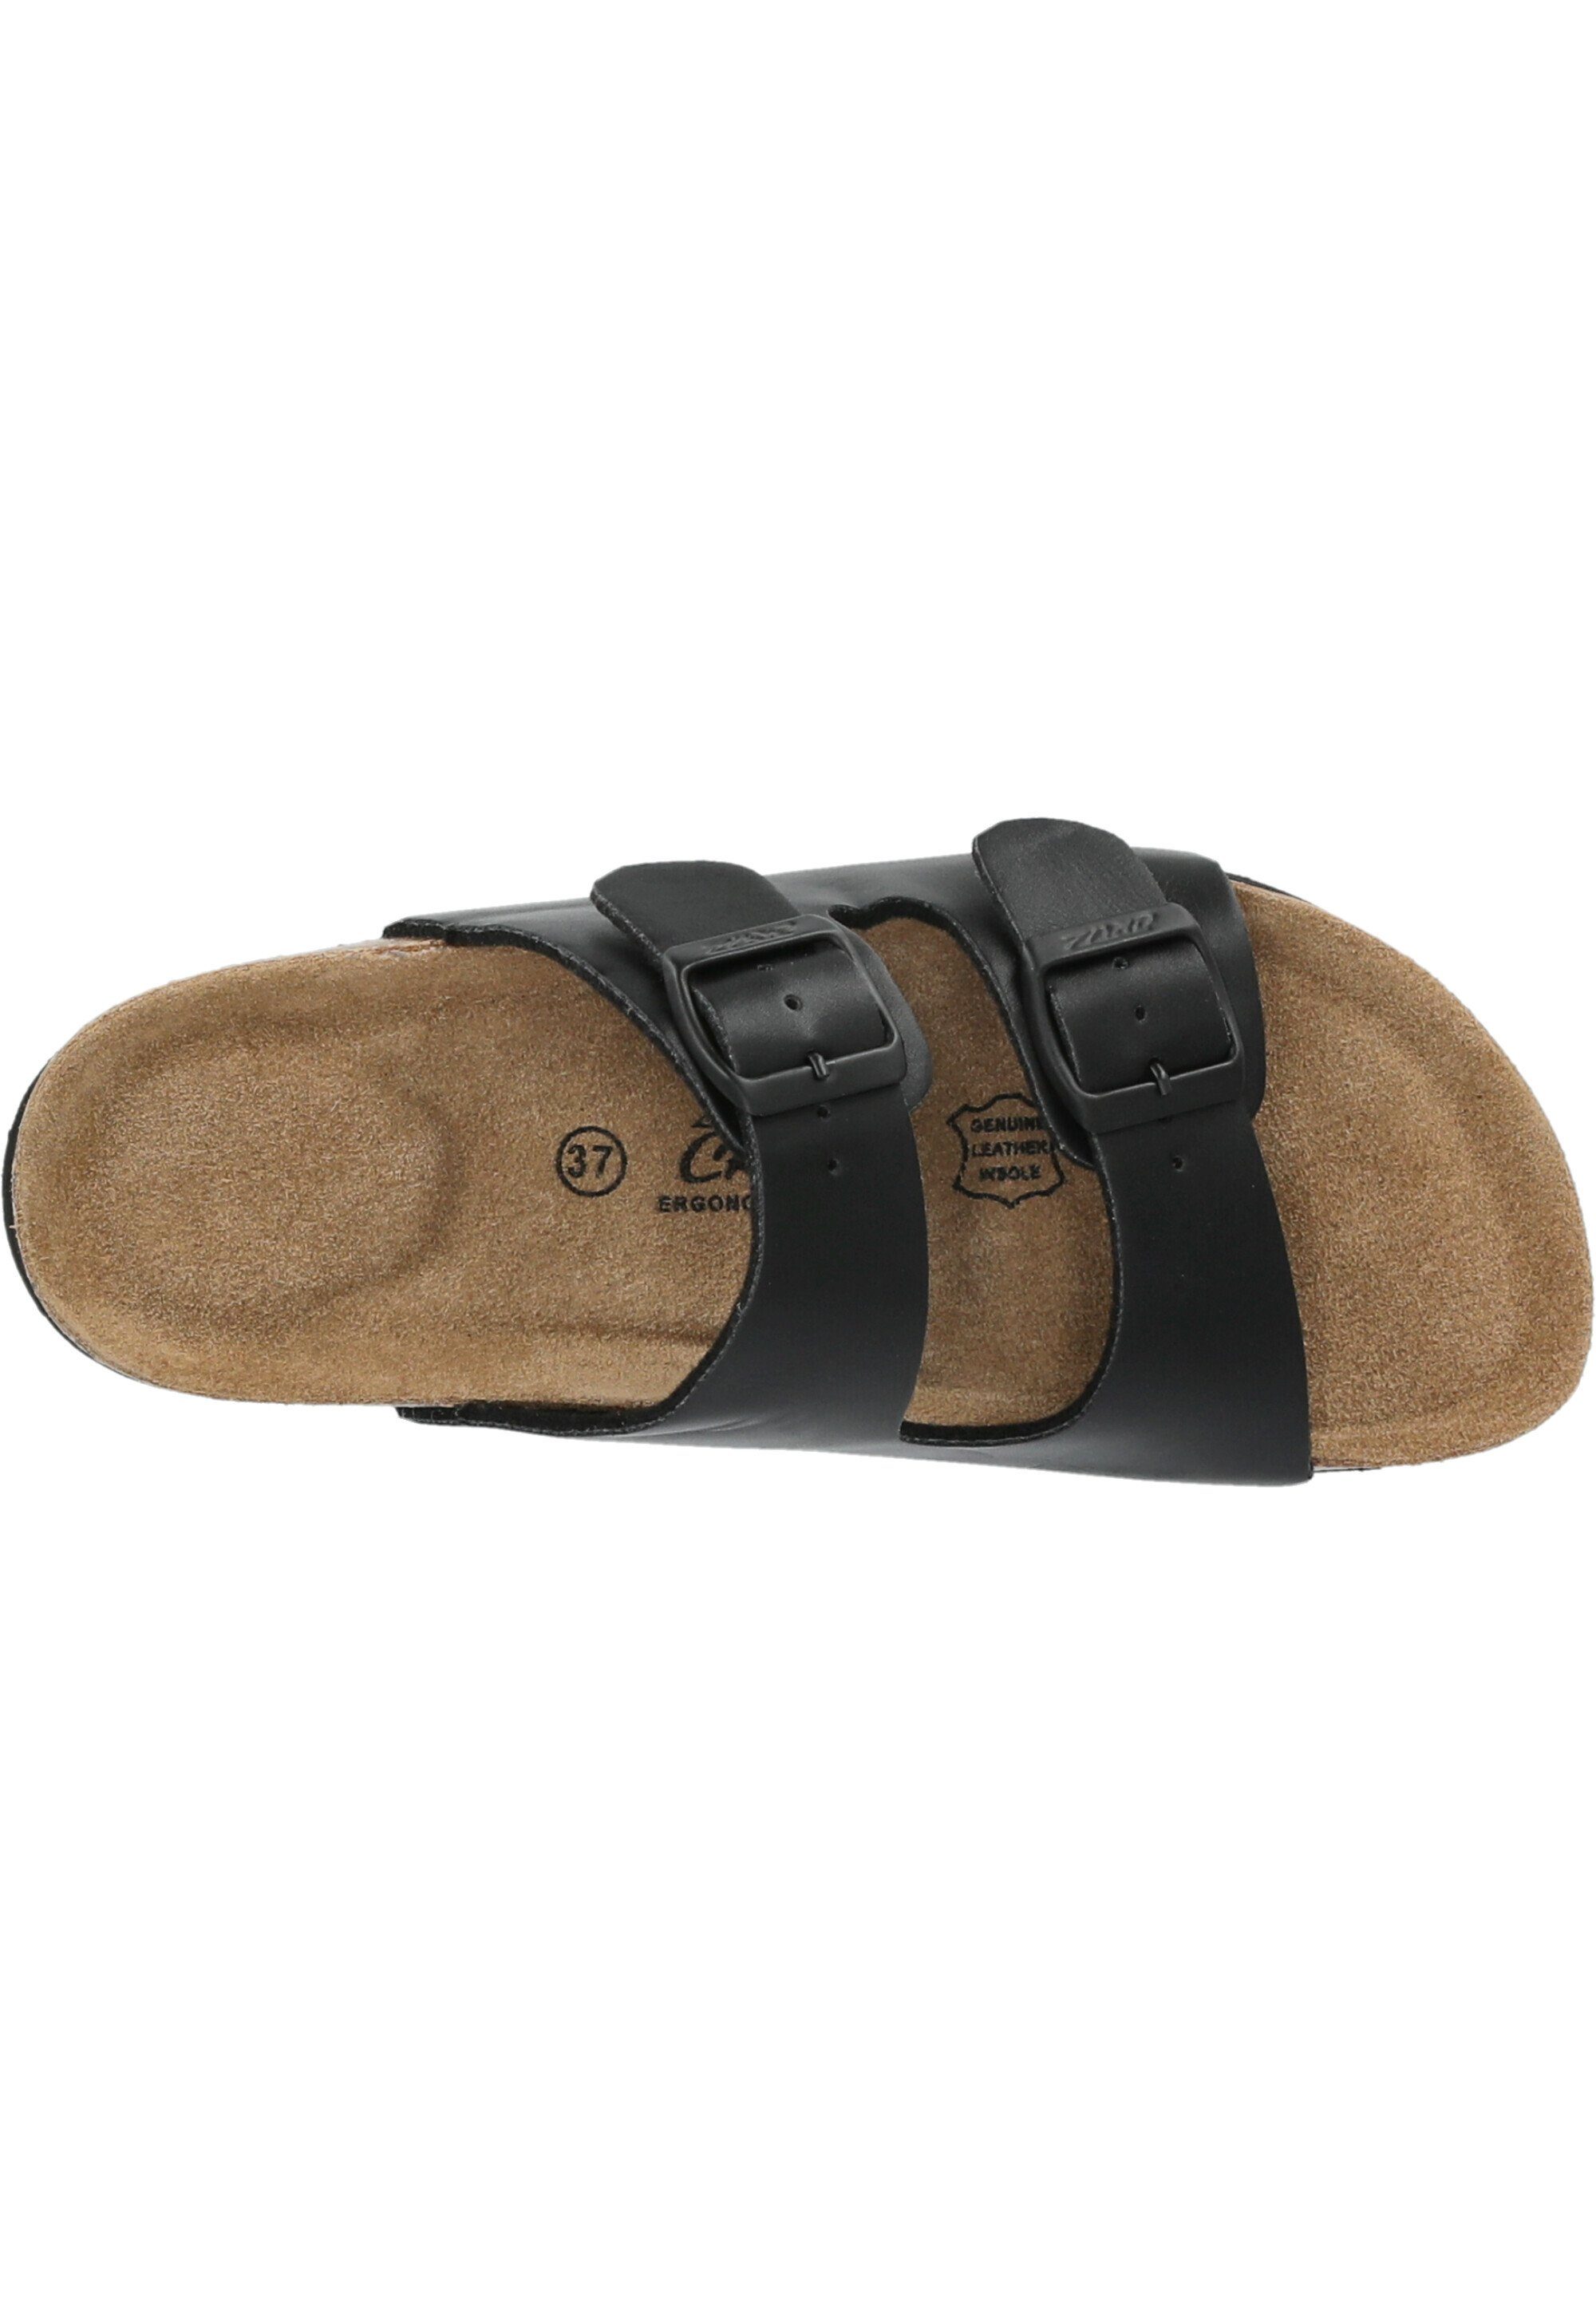 CRUZ Keyren Allwetter-Profil mit Sandale schwarz praktischem